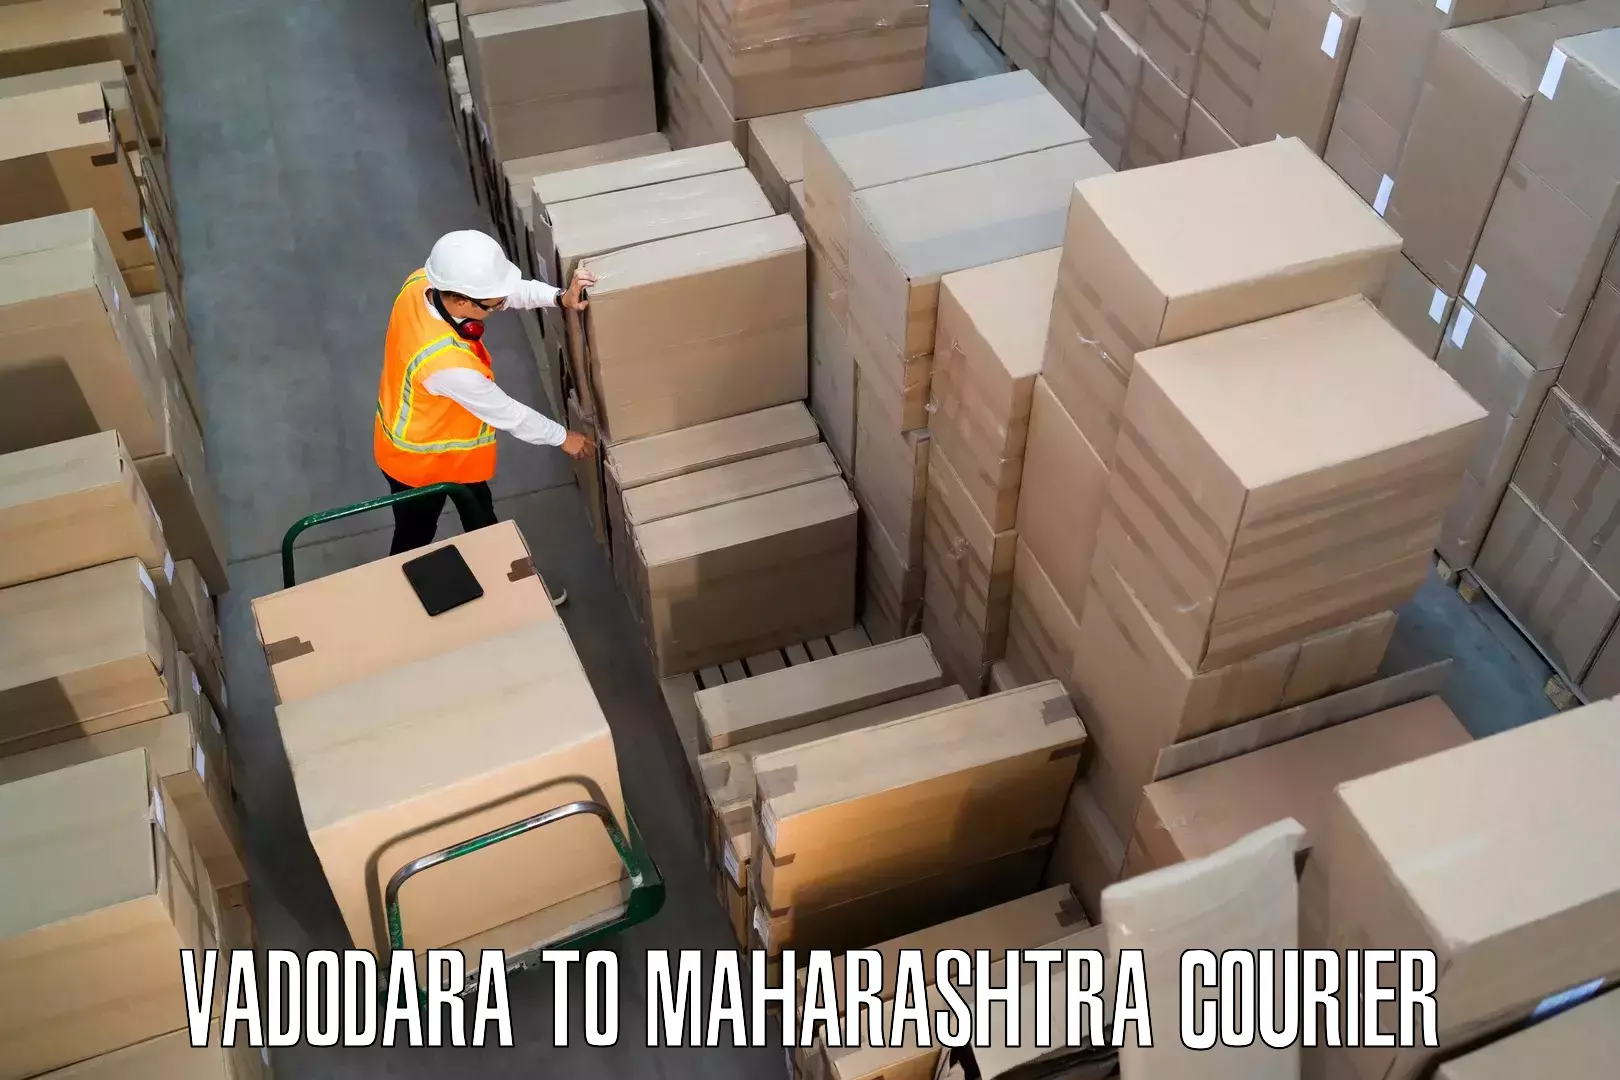 Furniture moving experts Vadodara to IIIT Pune